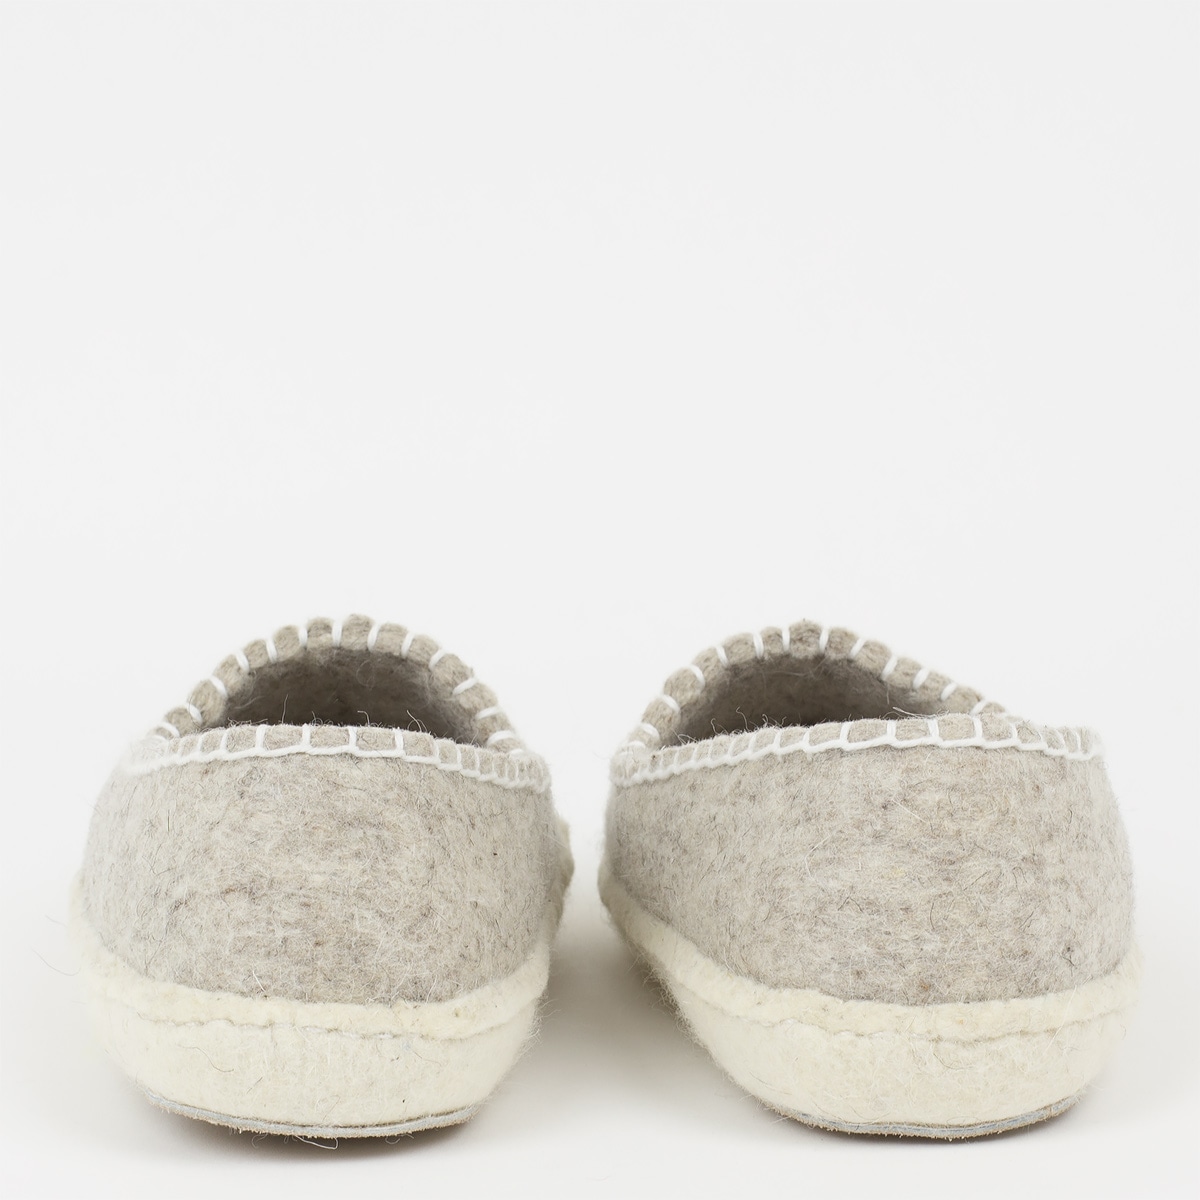 FELT Slippers, grey/white